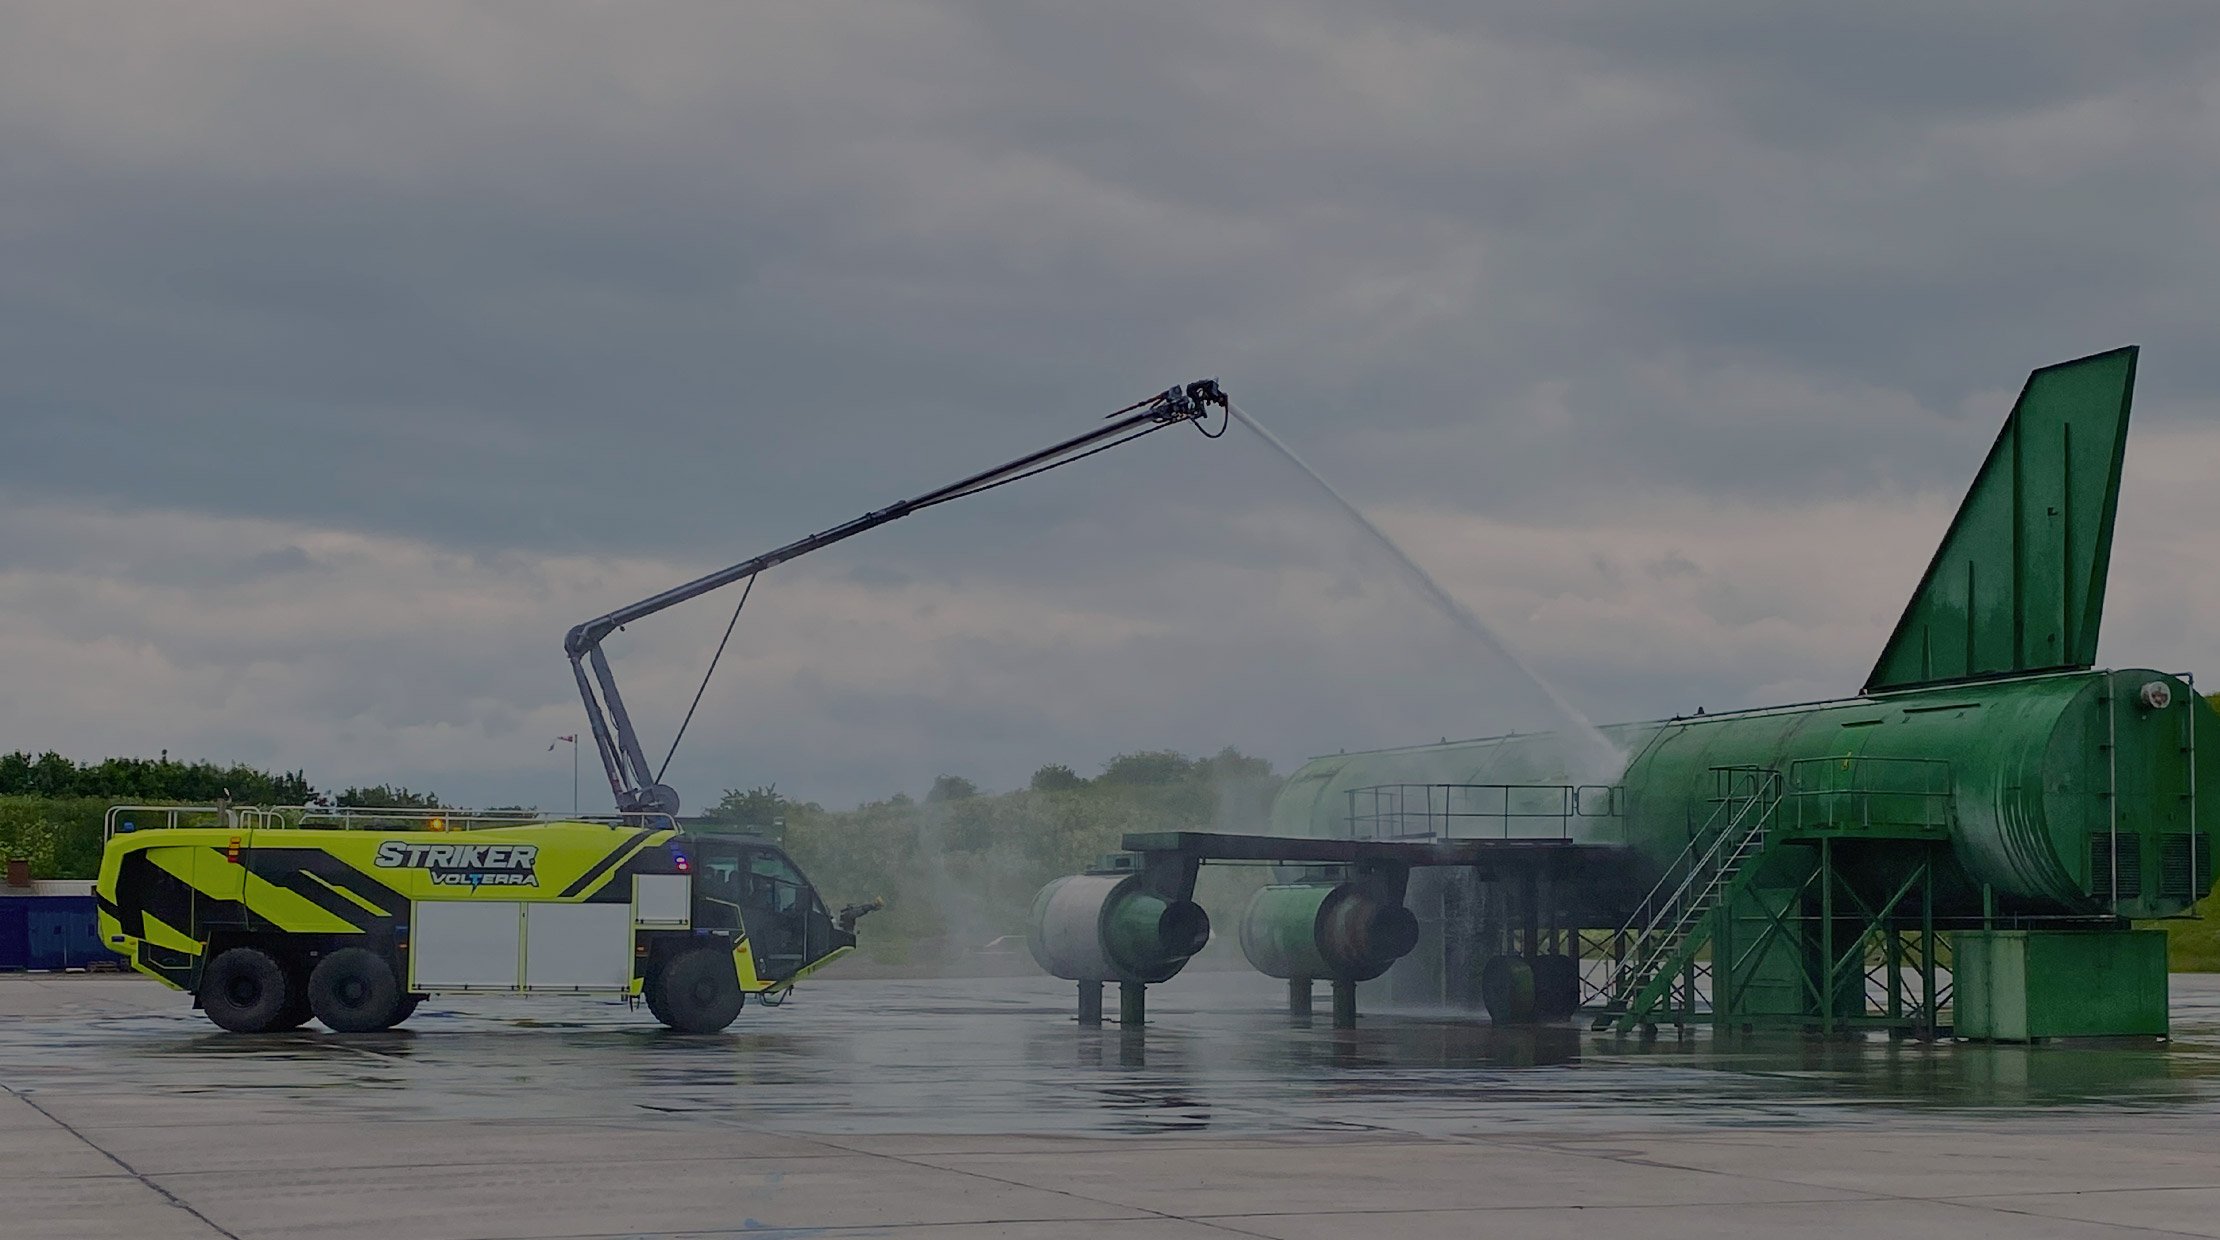 Oshkosh Striker Volterra ARFF Vehicle spraying water on airplane.